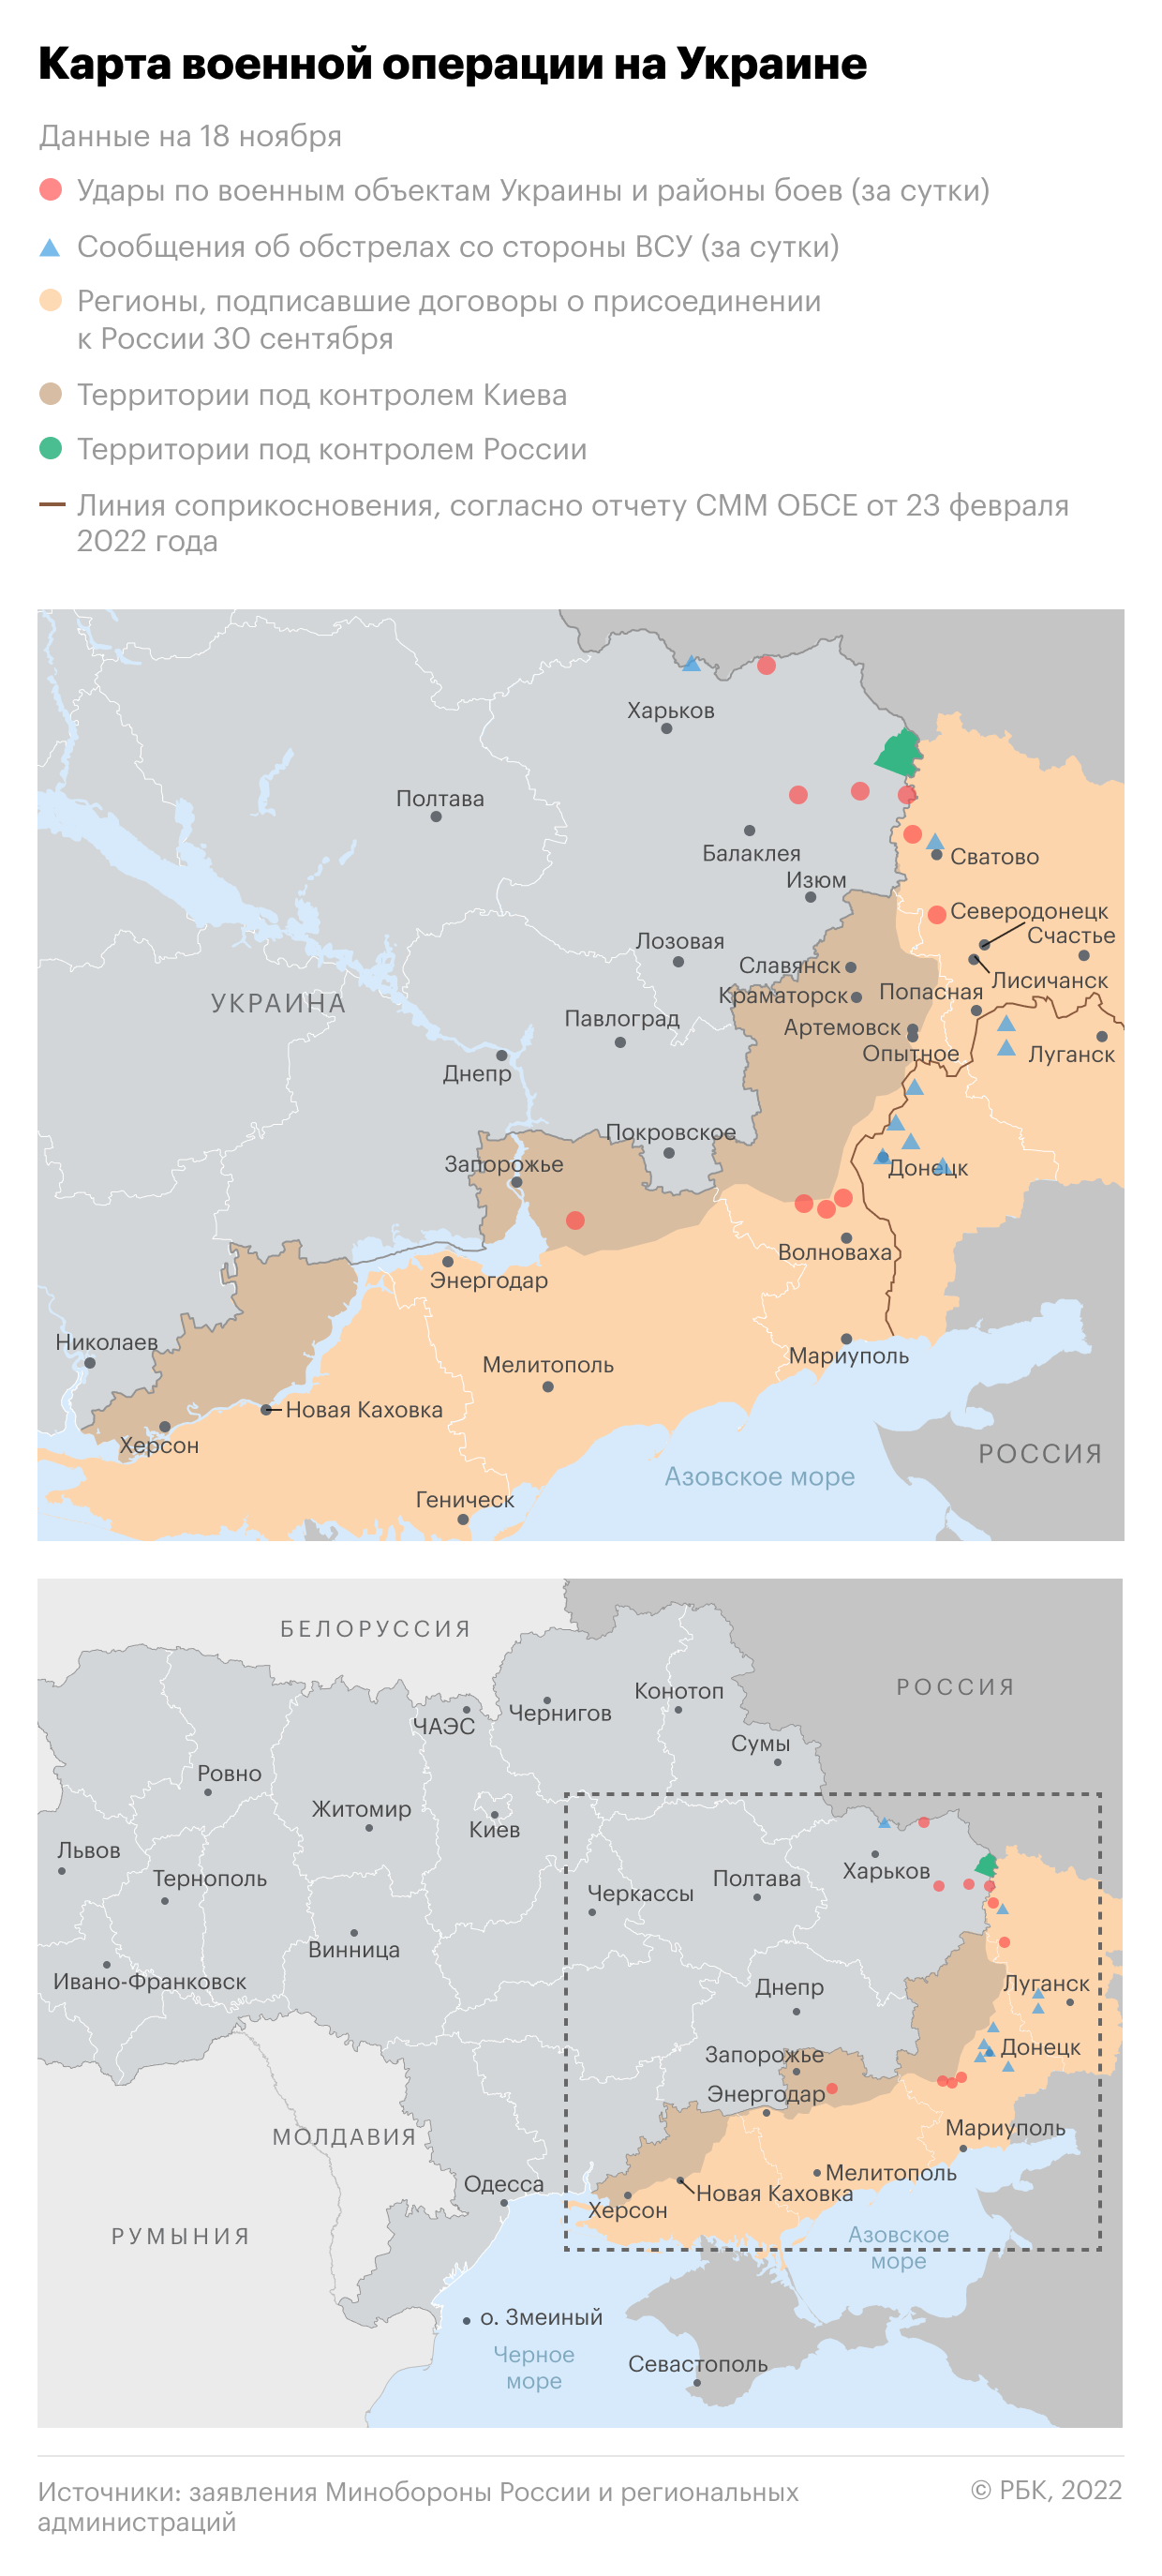 Киев выразил уверенность в операции по возвращению Крыма"/>













